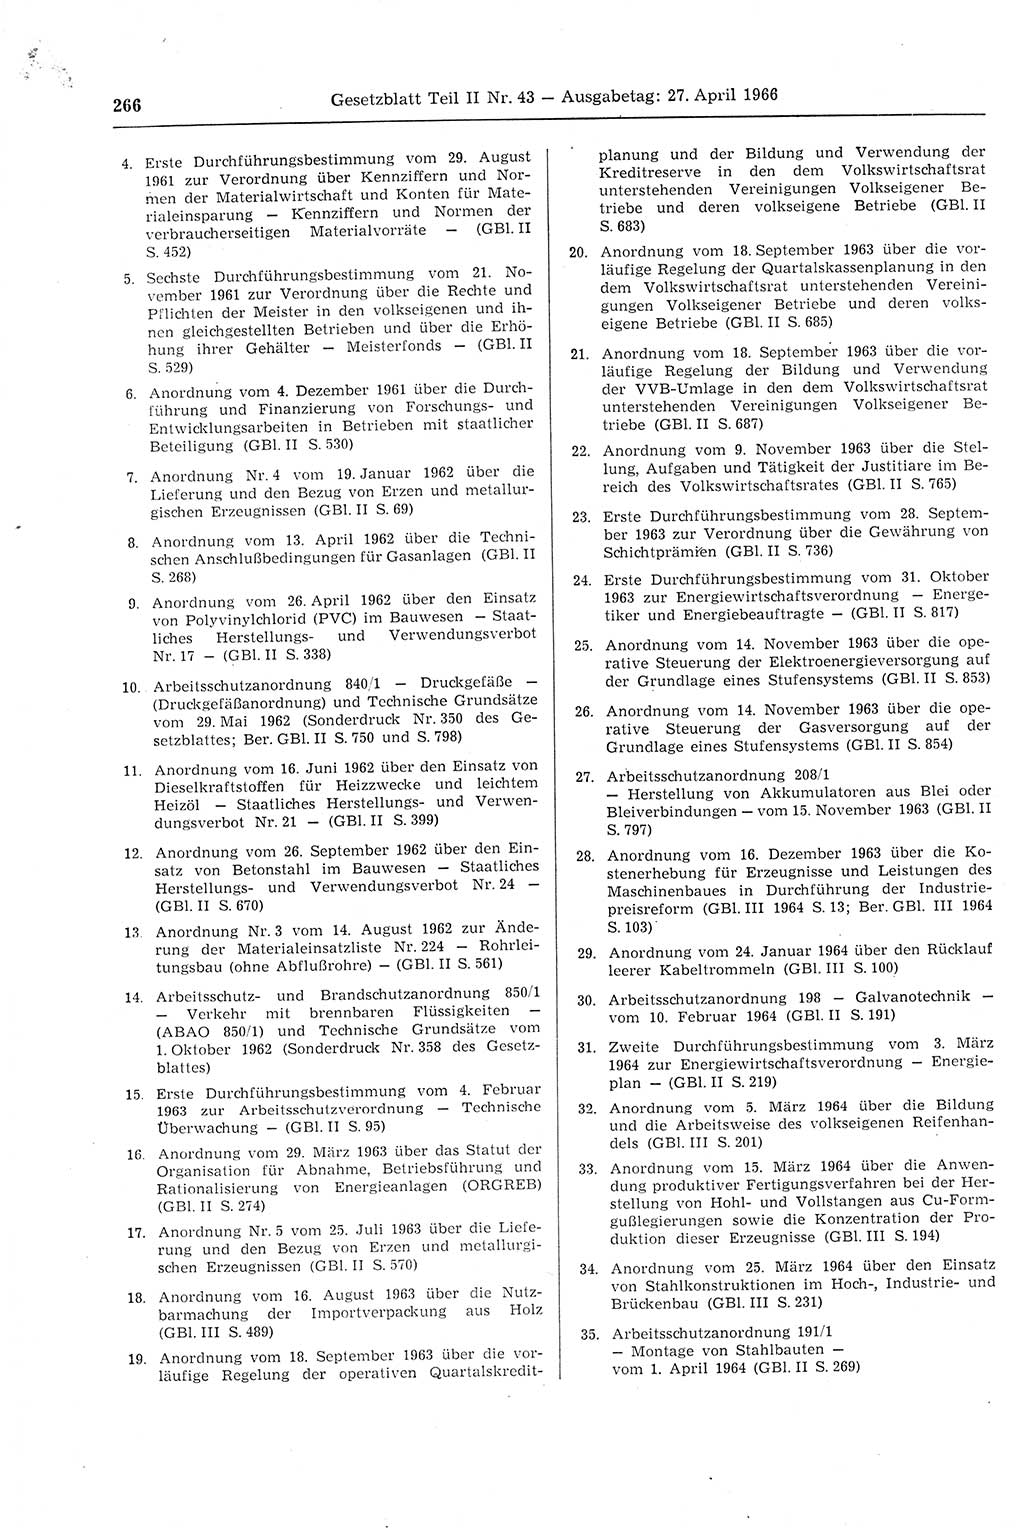 Gesetzblatt (GBl.) der Deutschen Demokratischen Republik (DDR) Teil ⅠⅠ 1966, Seite 266 (GBl. DDR ⅠⅠ 1966, S. 266)